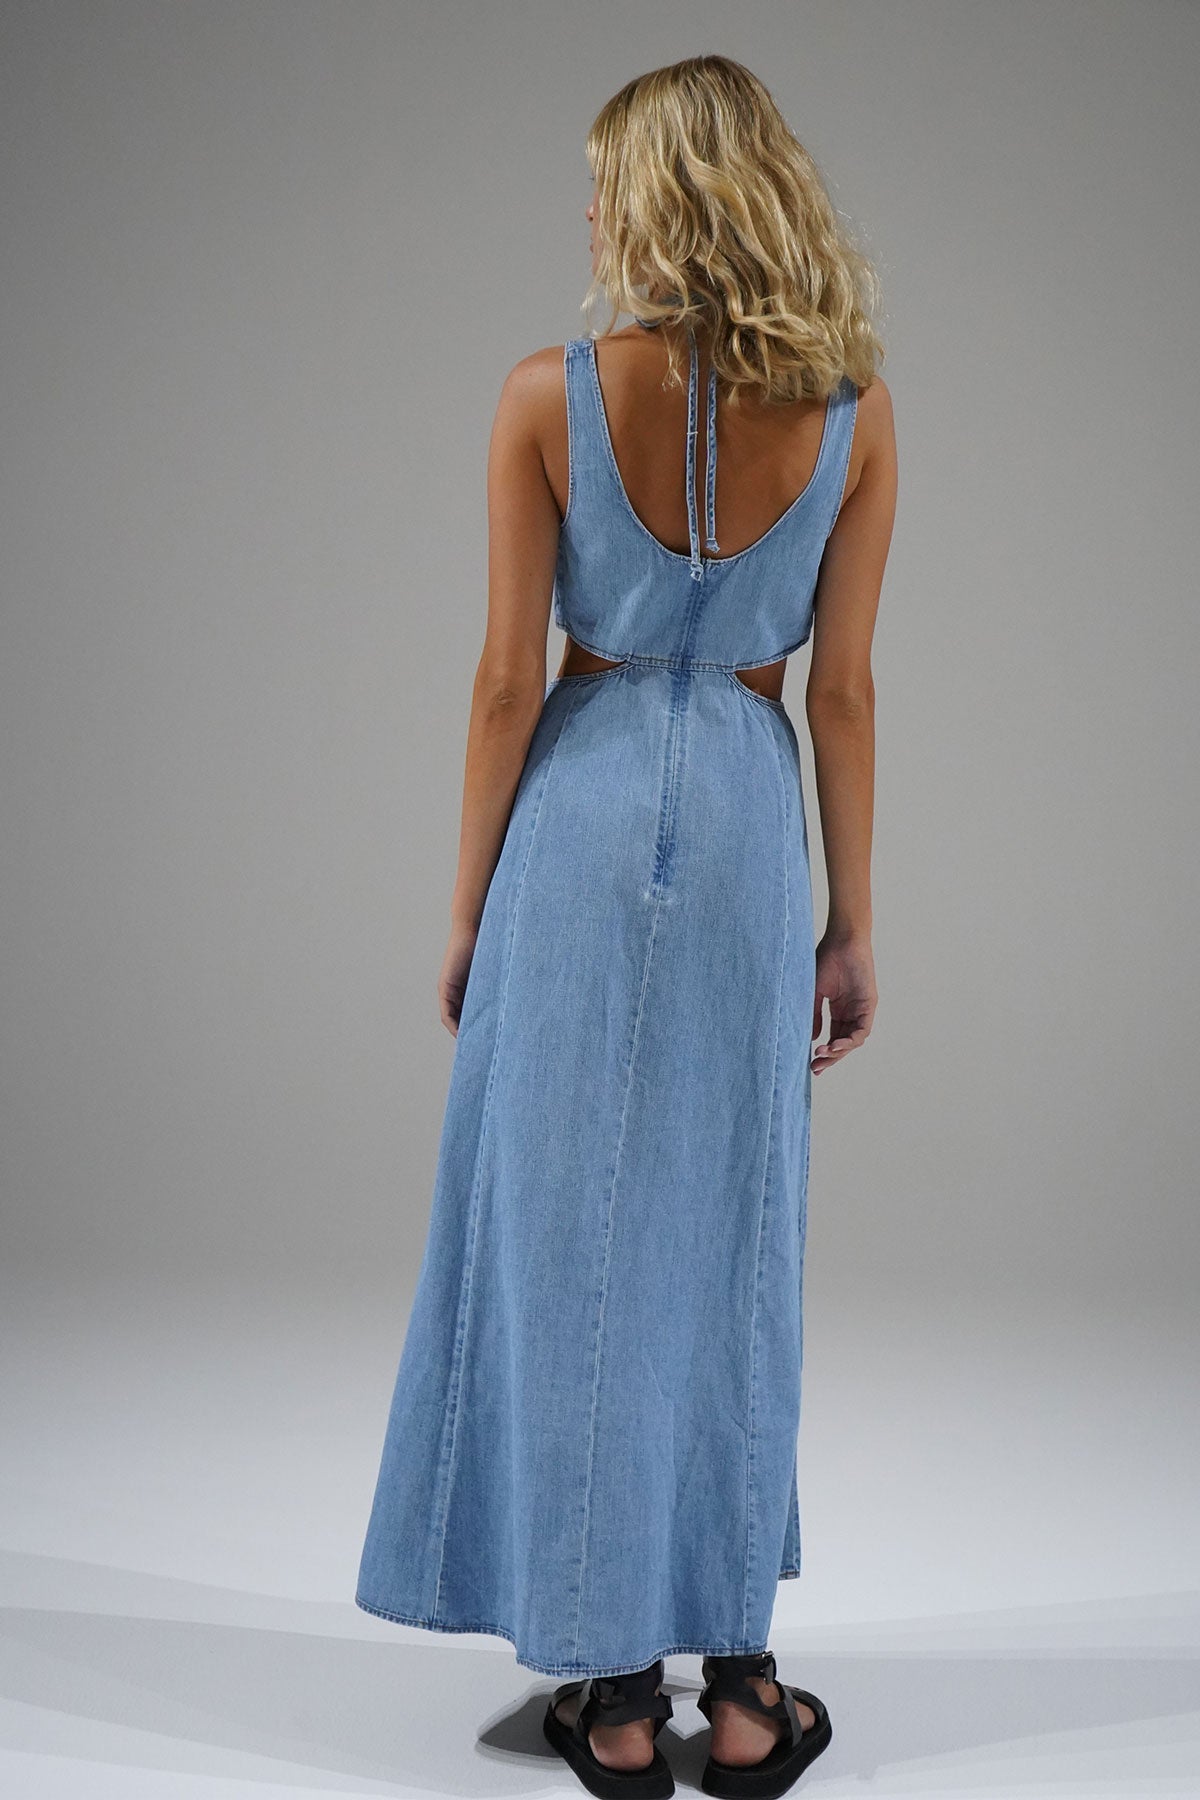 שמלת LNA Lorelei Chambray בצבע כחול דהוי